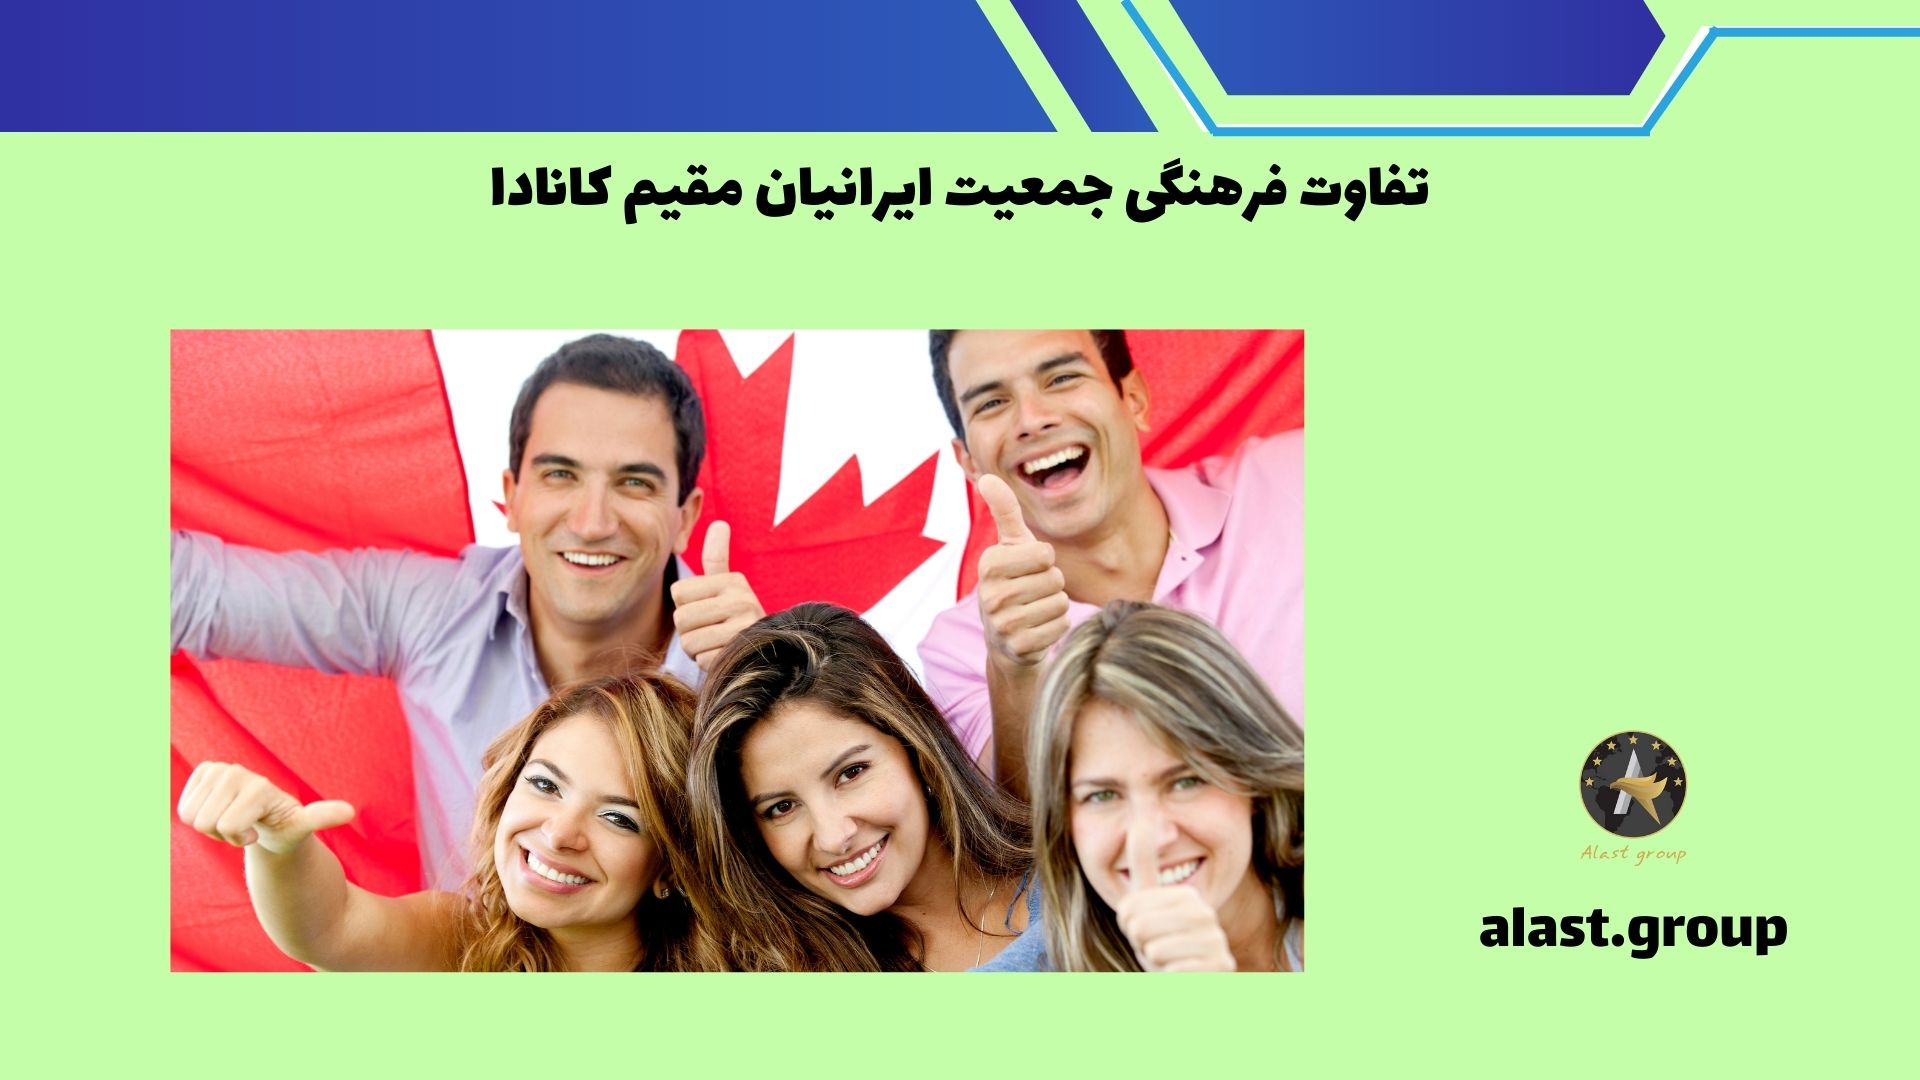 تفاوت فرهنگی جمعیت ایرانیان مقیم کانادا